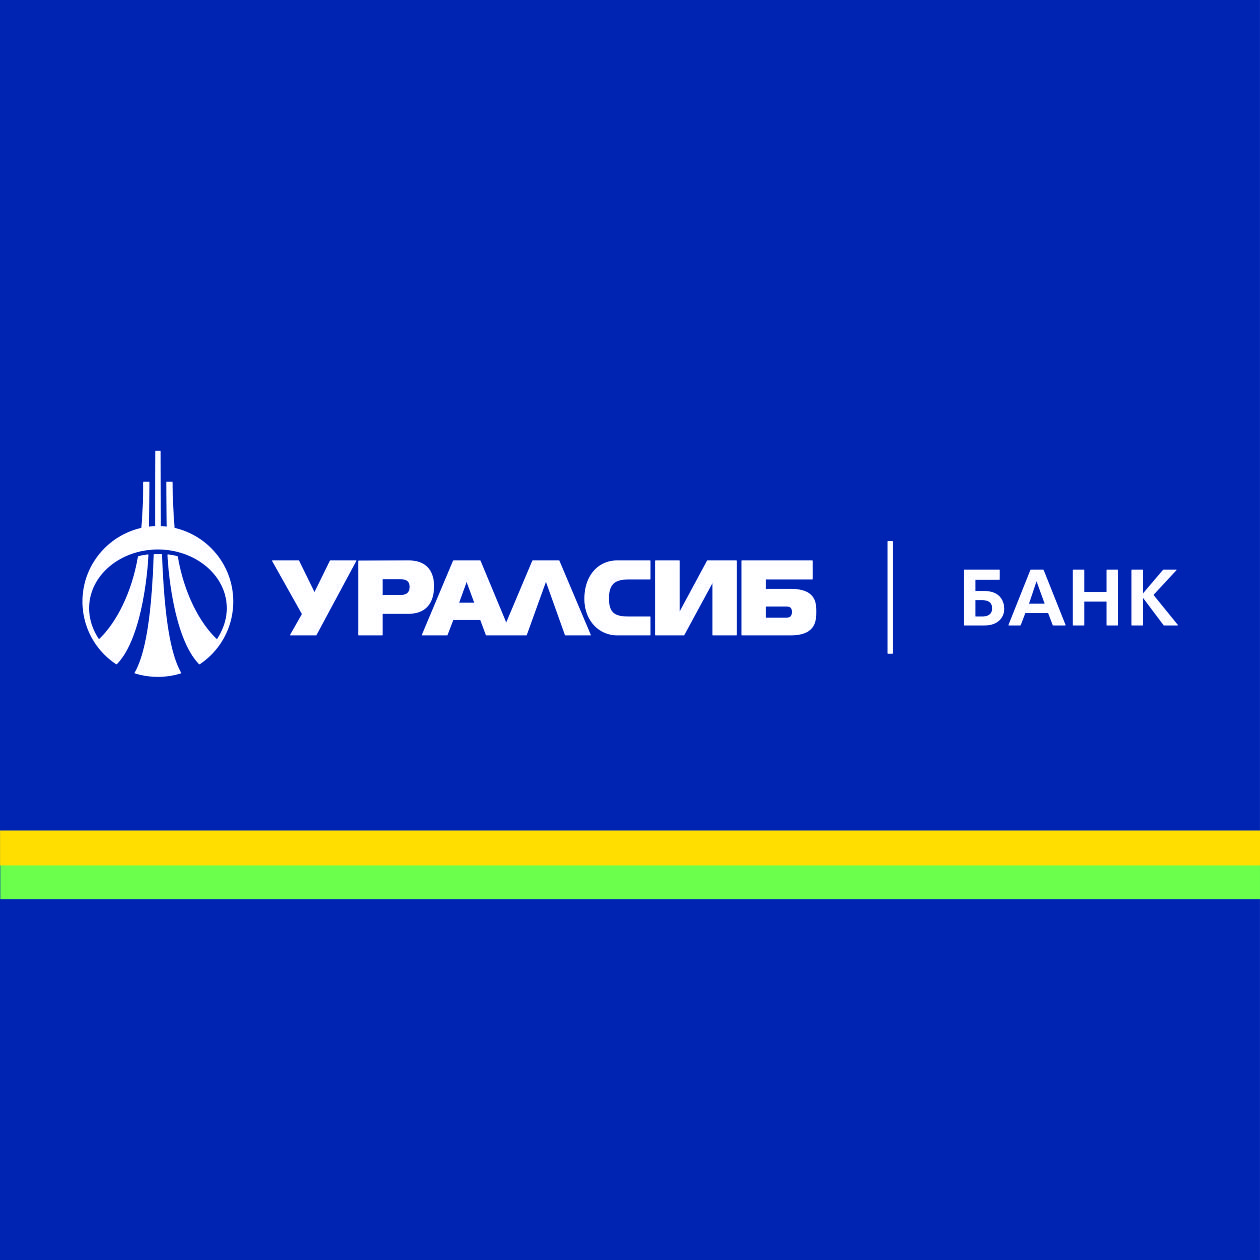 Банк УРАЛСИБ за 1 квартал 2019 года получил прибыль 4,7 млрд рублей по РСБУ